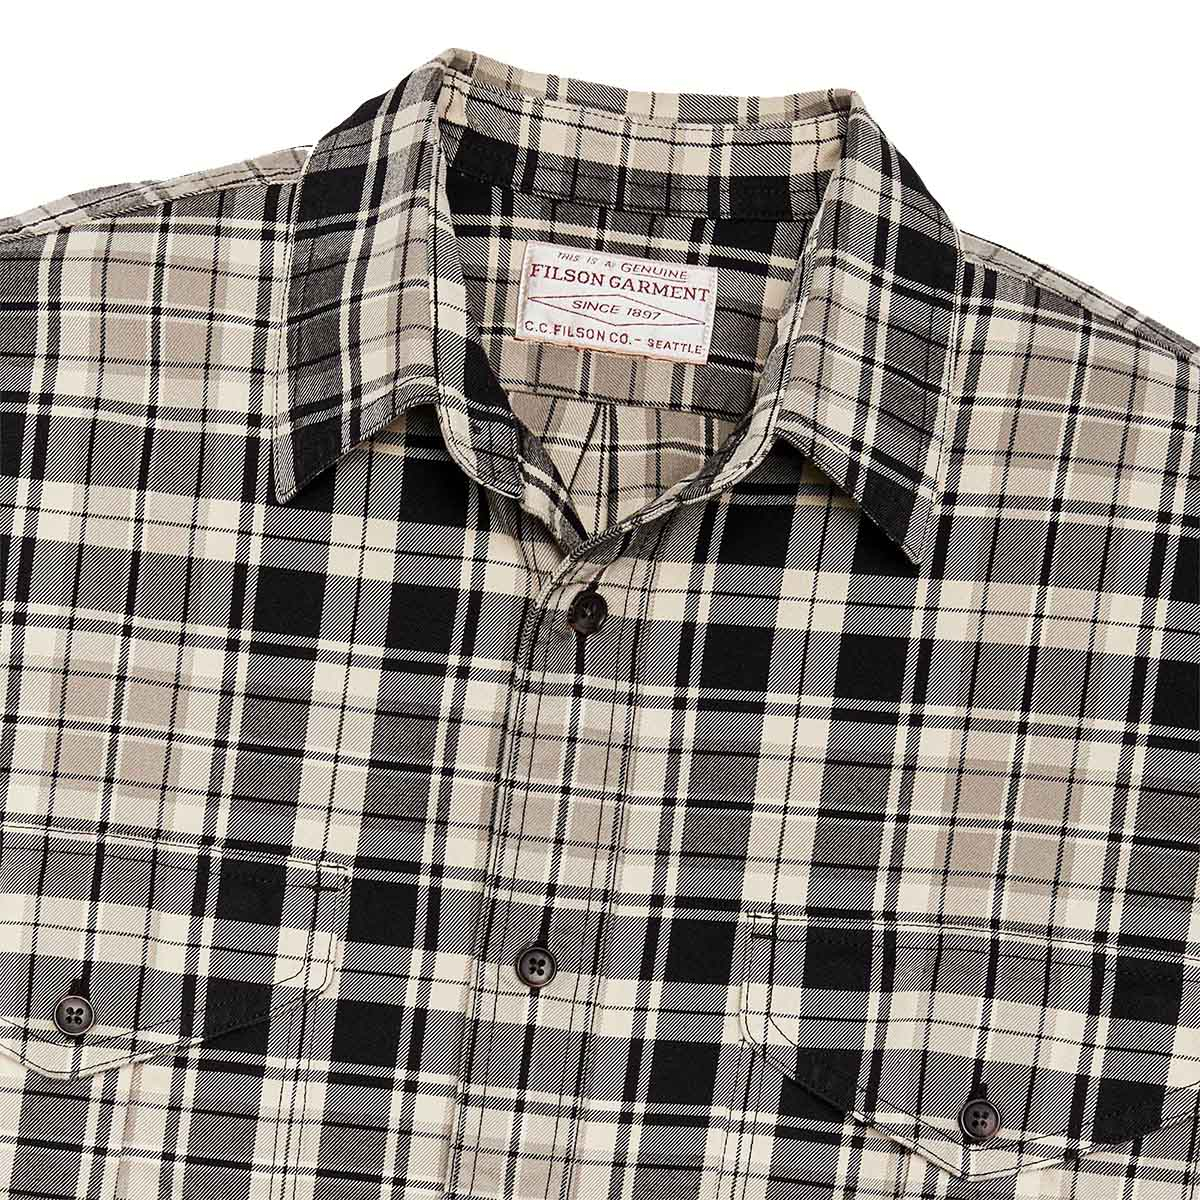 Filson Lightweight Alaskan Guide Shirt Cream/Black/Gray/Plaid, een lichtgewicht versie van Filsons iconische shirt